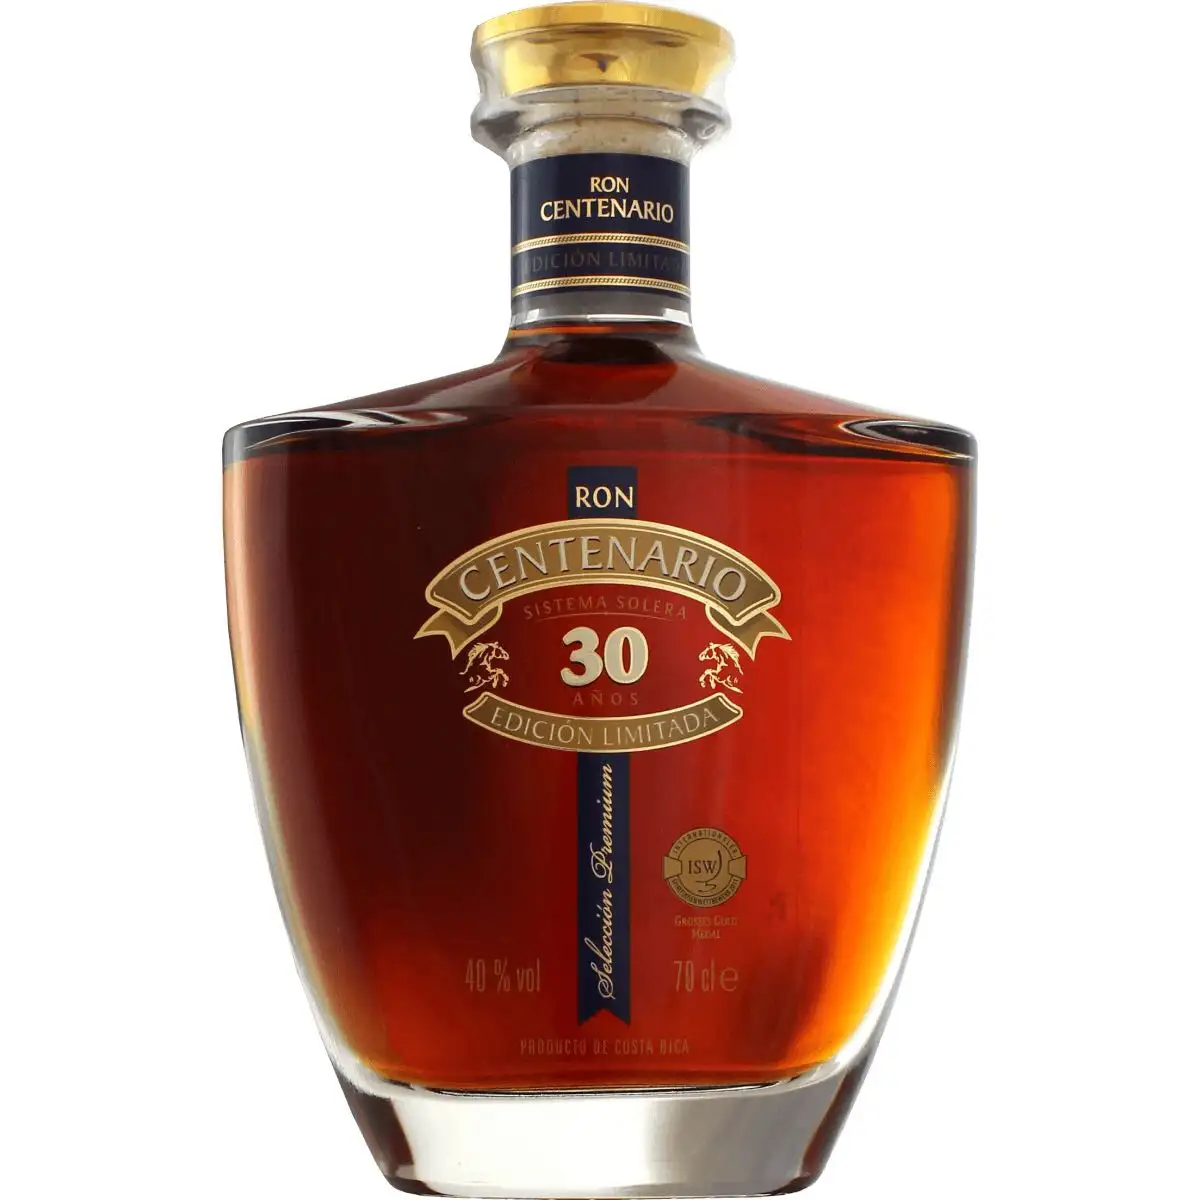 Image of the front of the bottle of the rum Centenario Fundación 30 Años Edicion Limitada